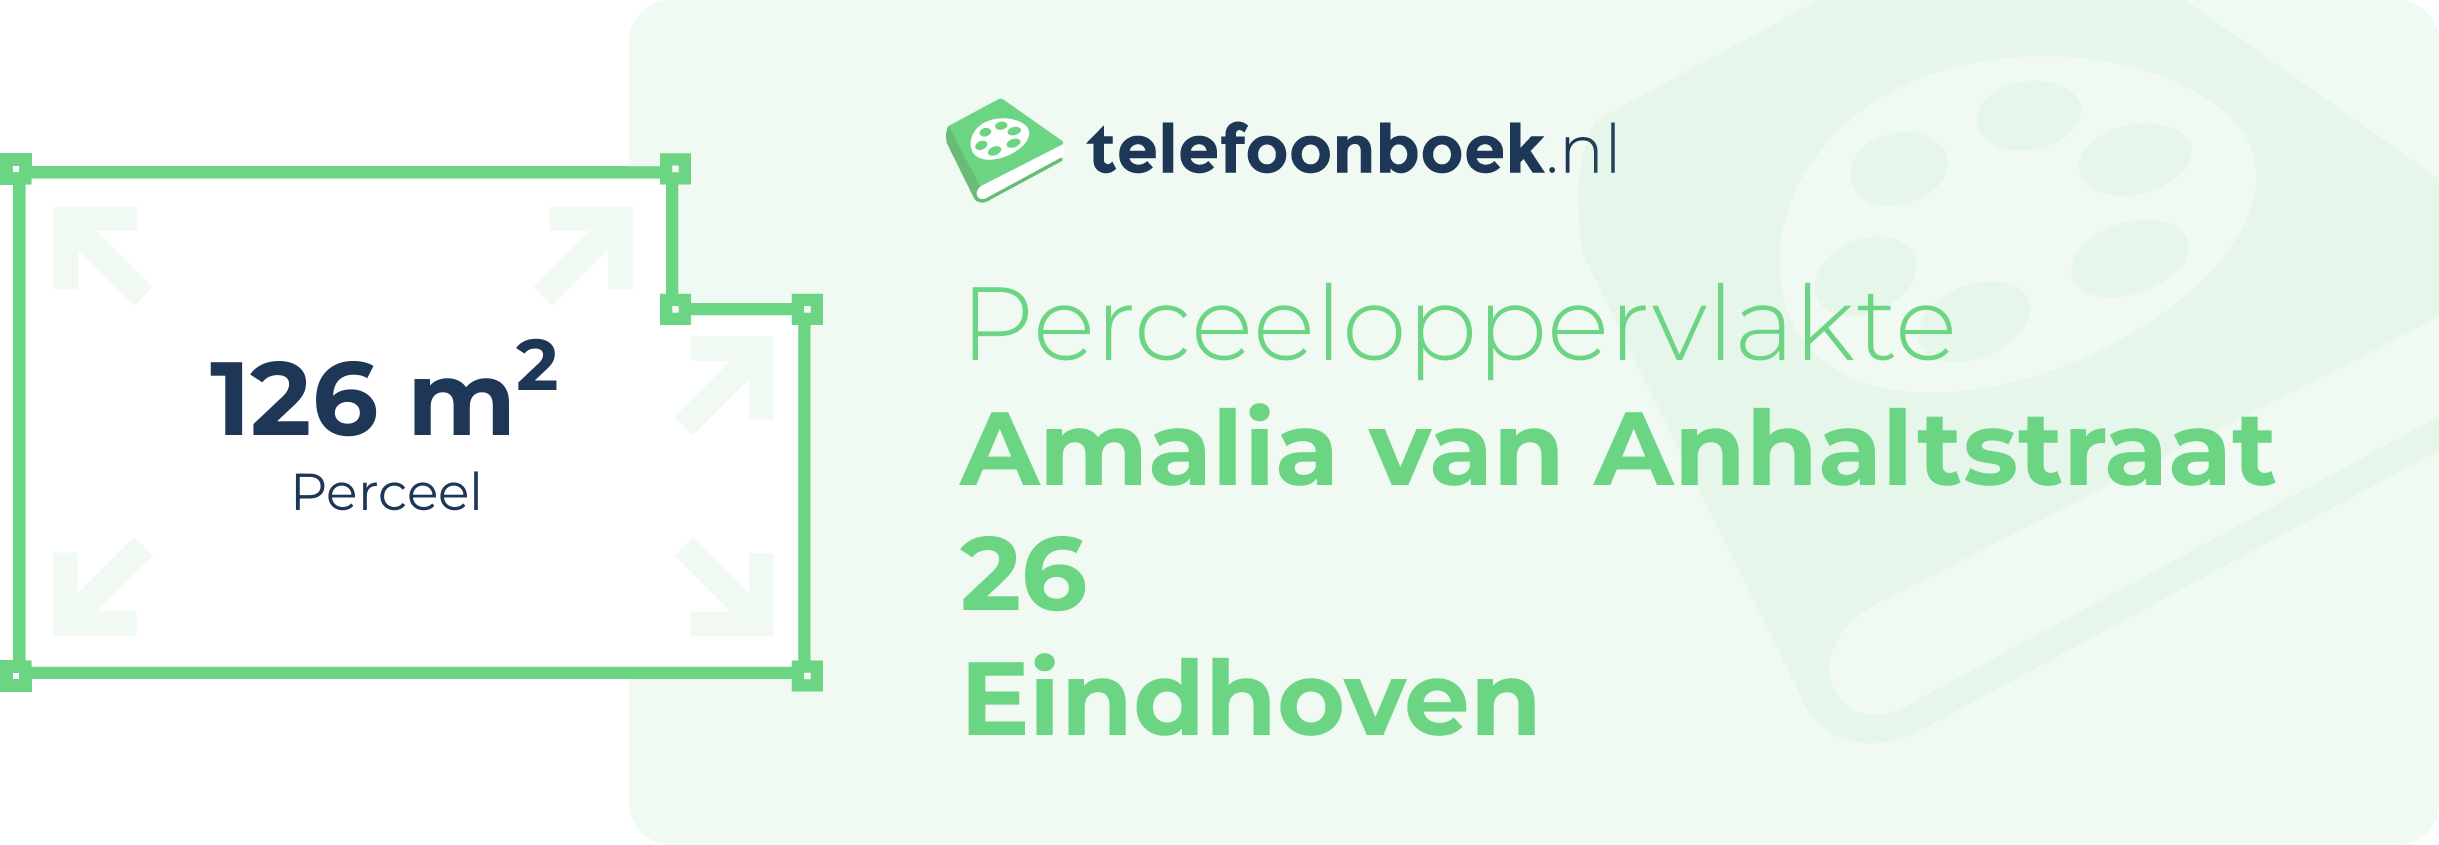 Perceeloppervlakte Amalia Van Anhaltstraat 26 Eindhoven